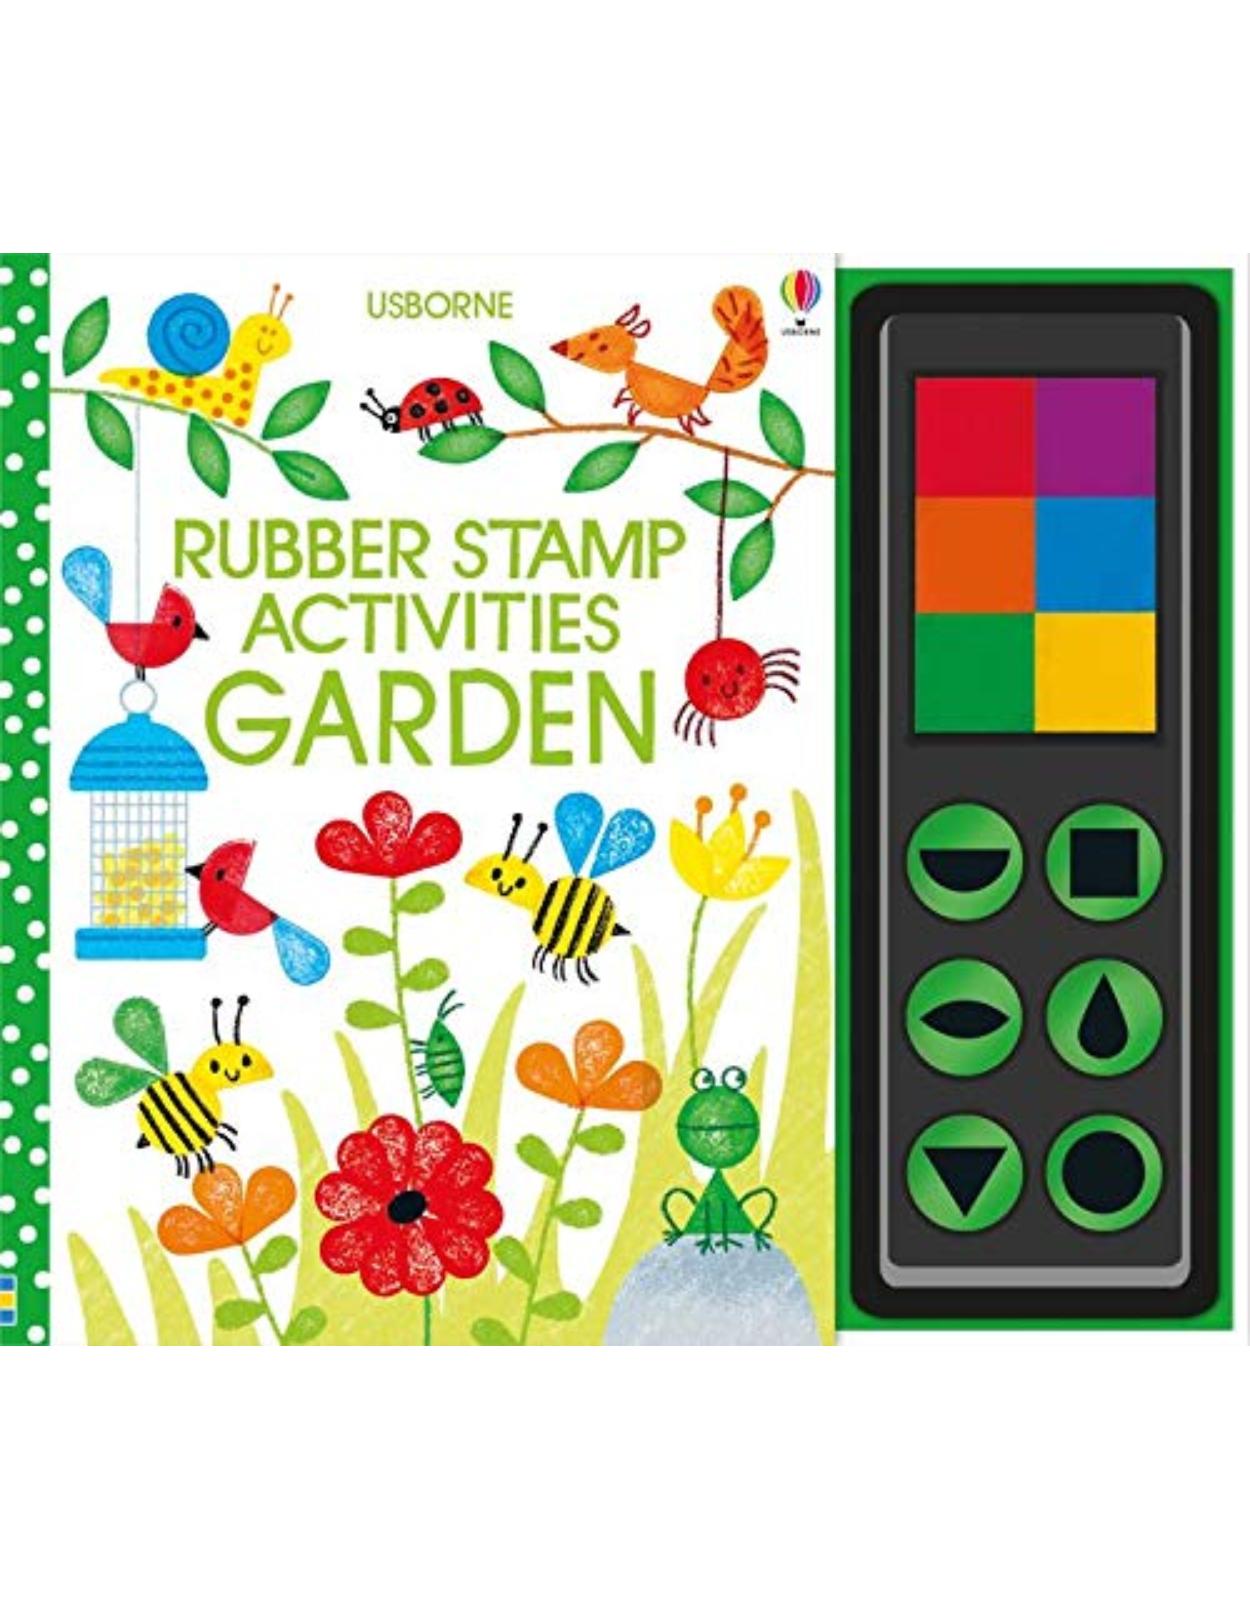 Rubber Stamp Activities Garden: 1